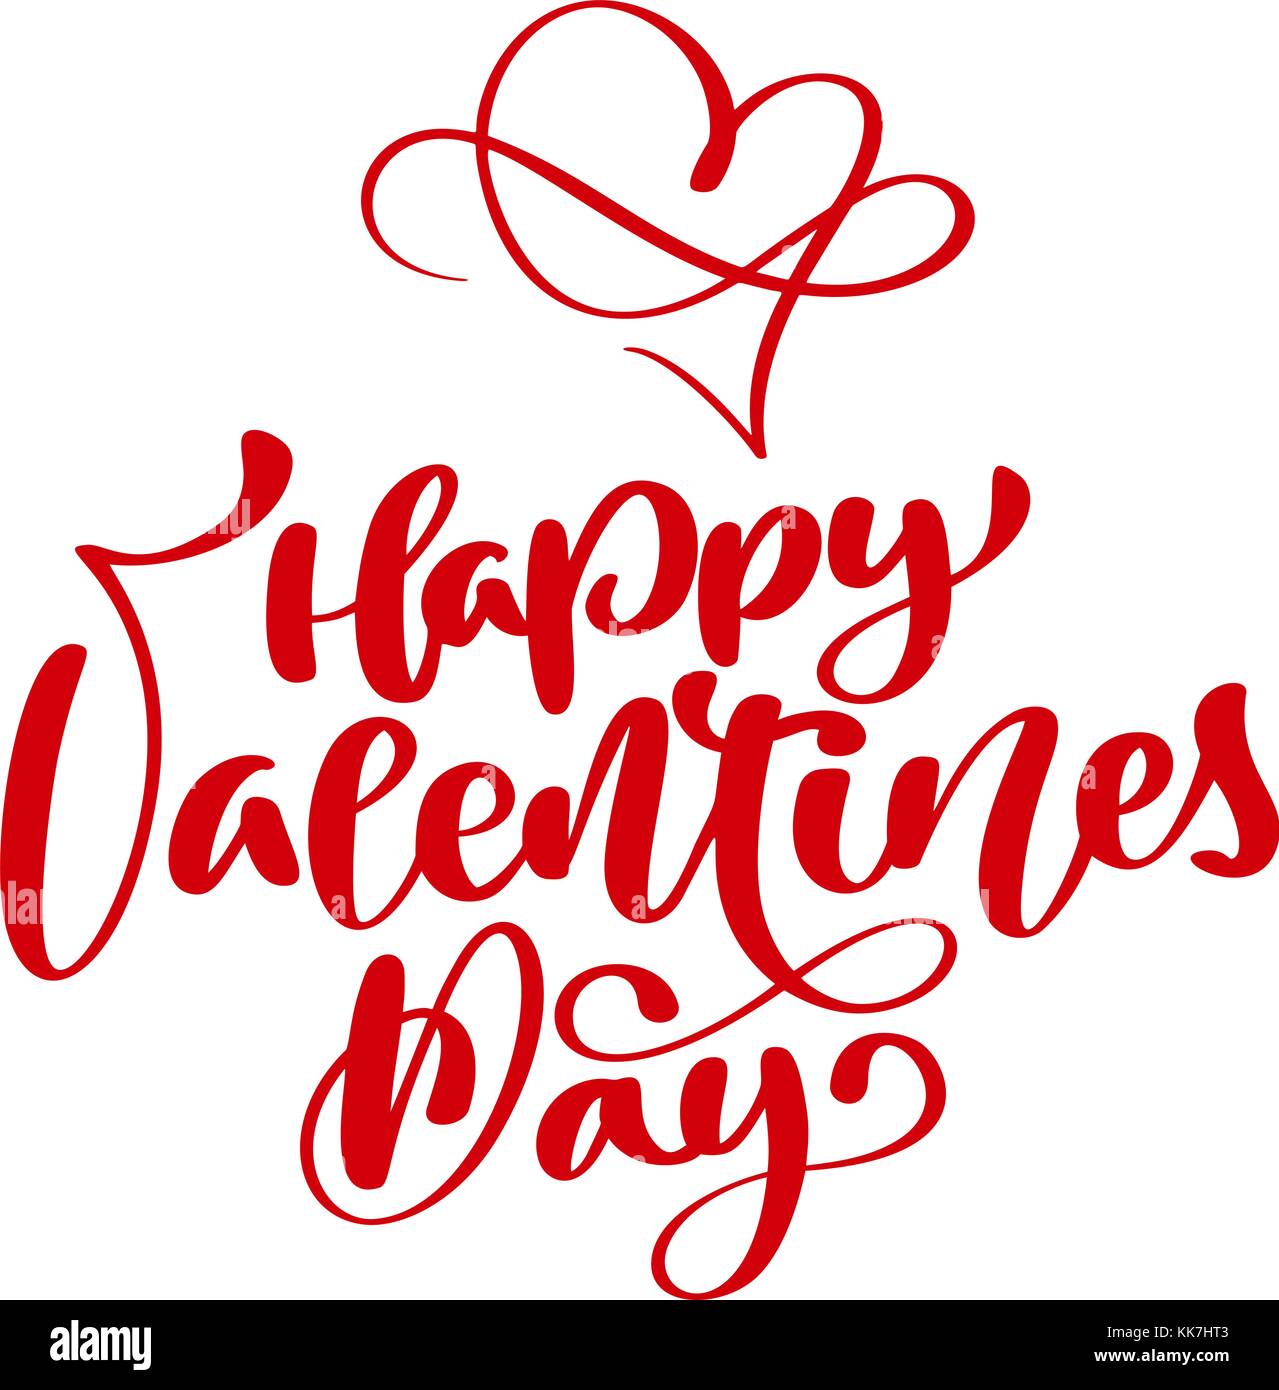 Happy valentines day rouge typographie manuscrite du texte de l'affiche avec calligraphie, isolé sur fond blanc. vector illustration Illustration de Vecteur